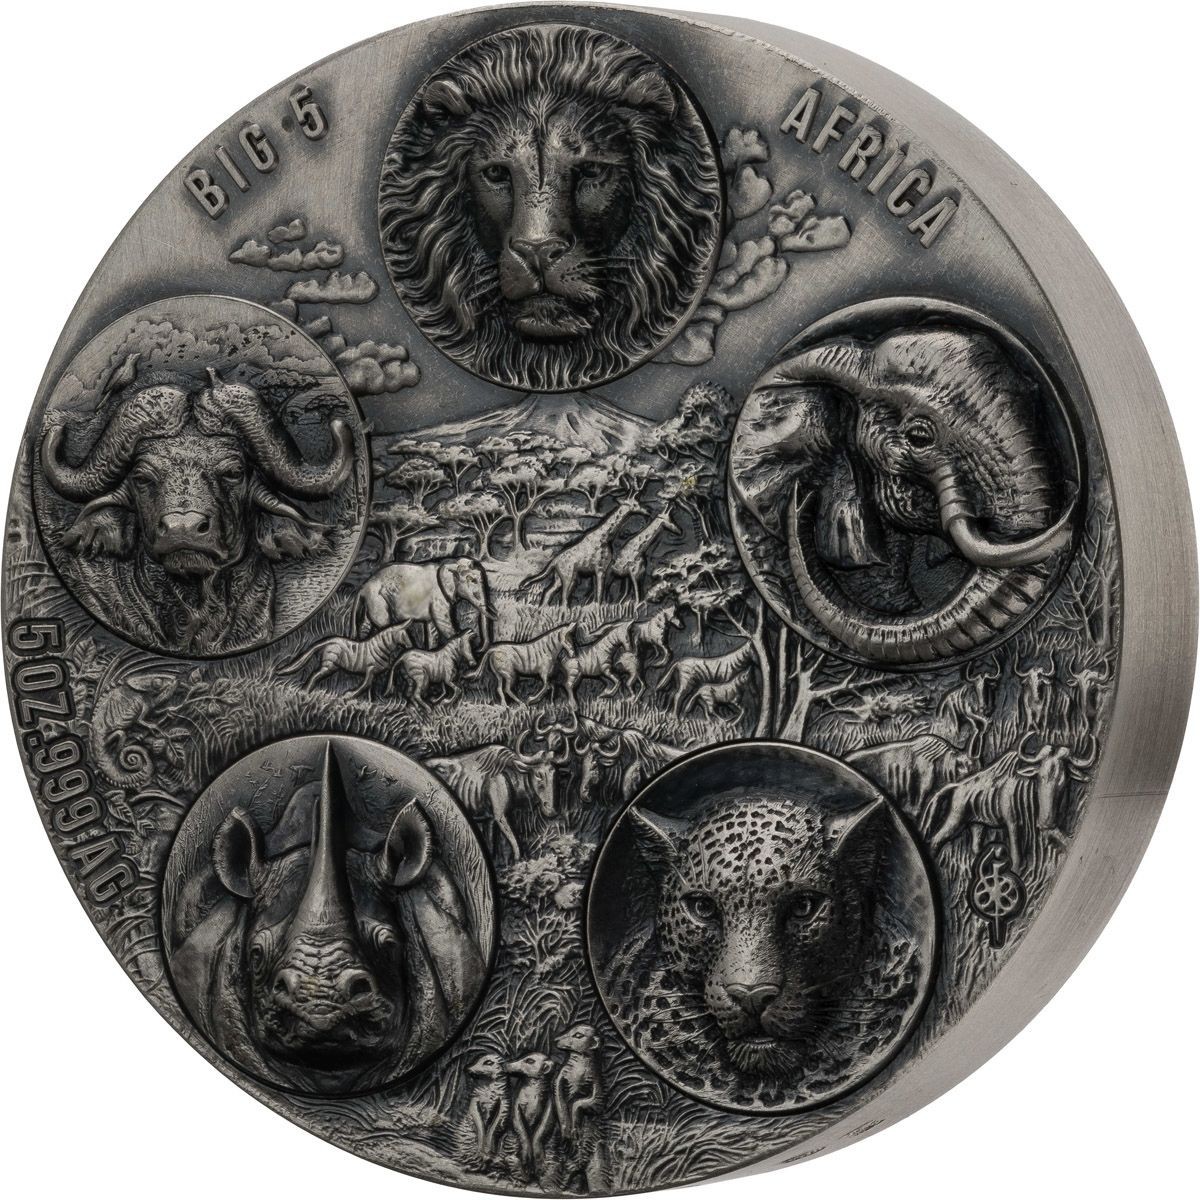 Stříbrná mince Big Five Africa - Completer 5 oz, vysoký reliéf, antique finish 2022